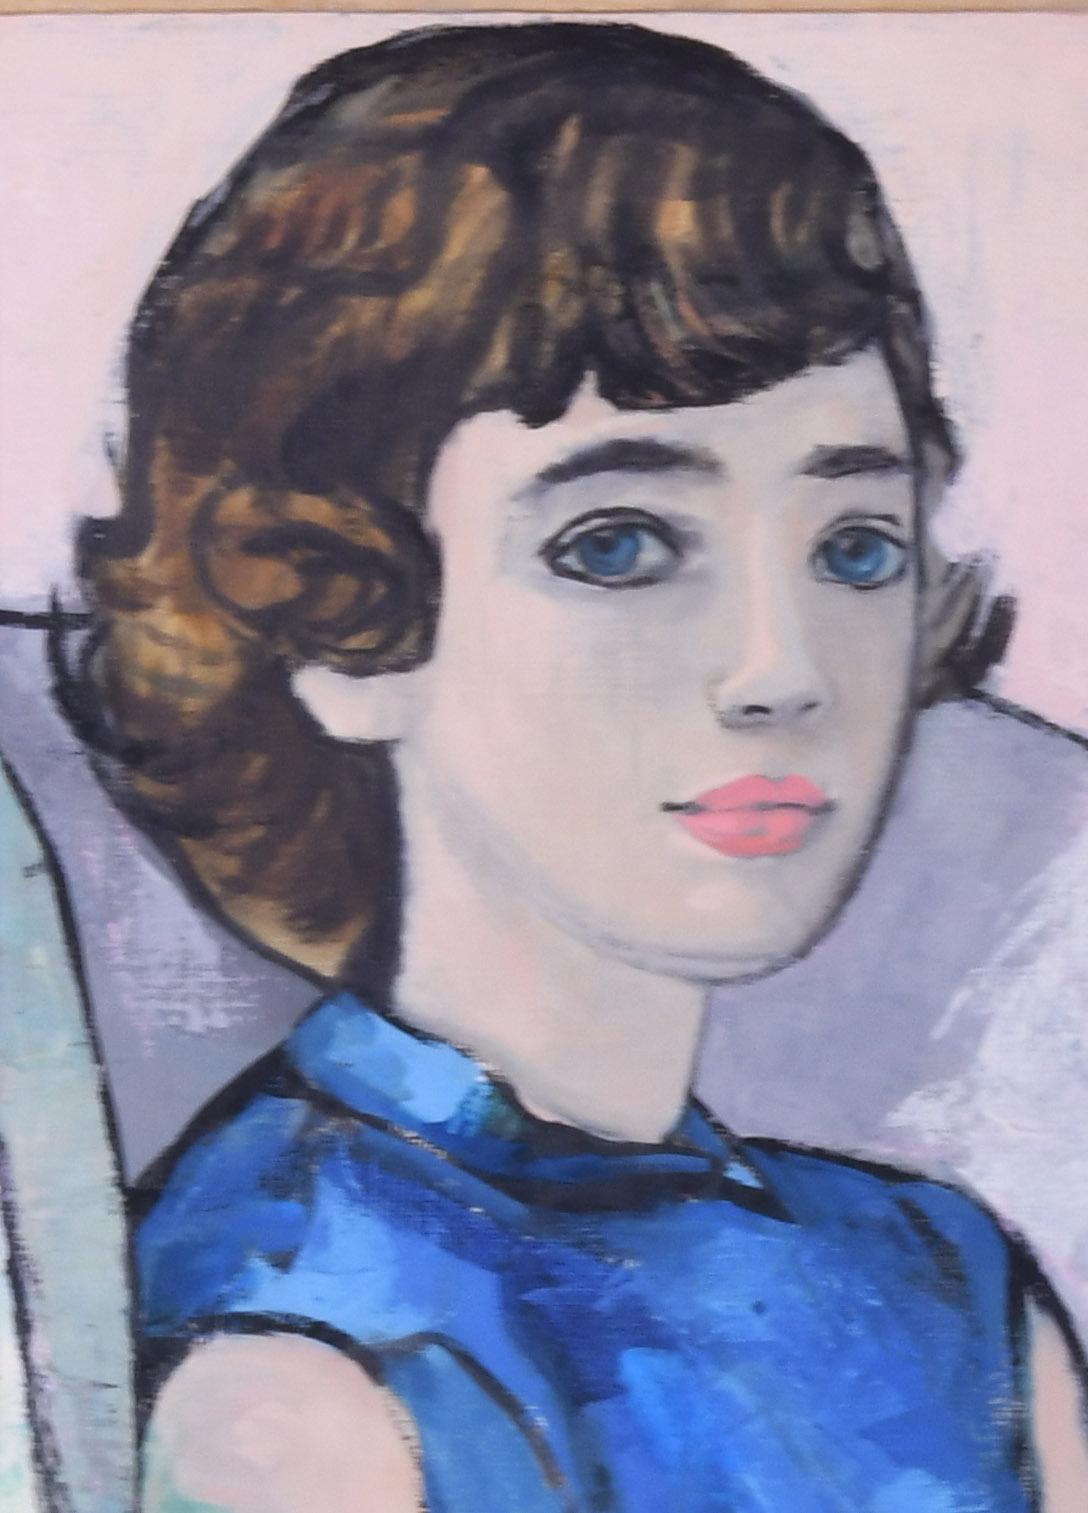 Portrait de jeune femme (autoportrait de l'artiste ?) - Painting de Franchetti Twombly, Baroness Luisa Tatiana